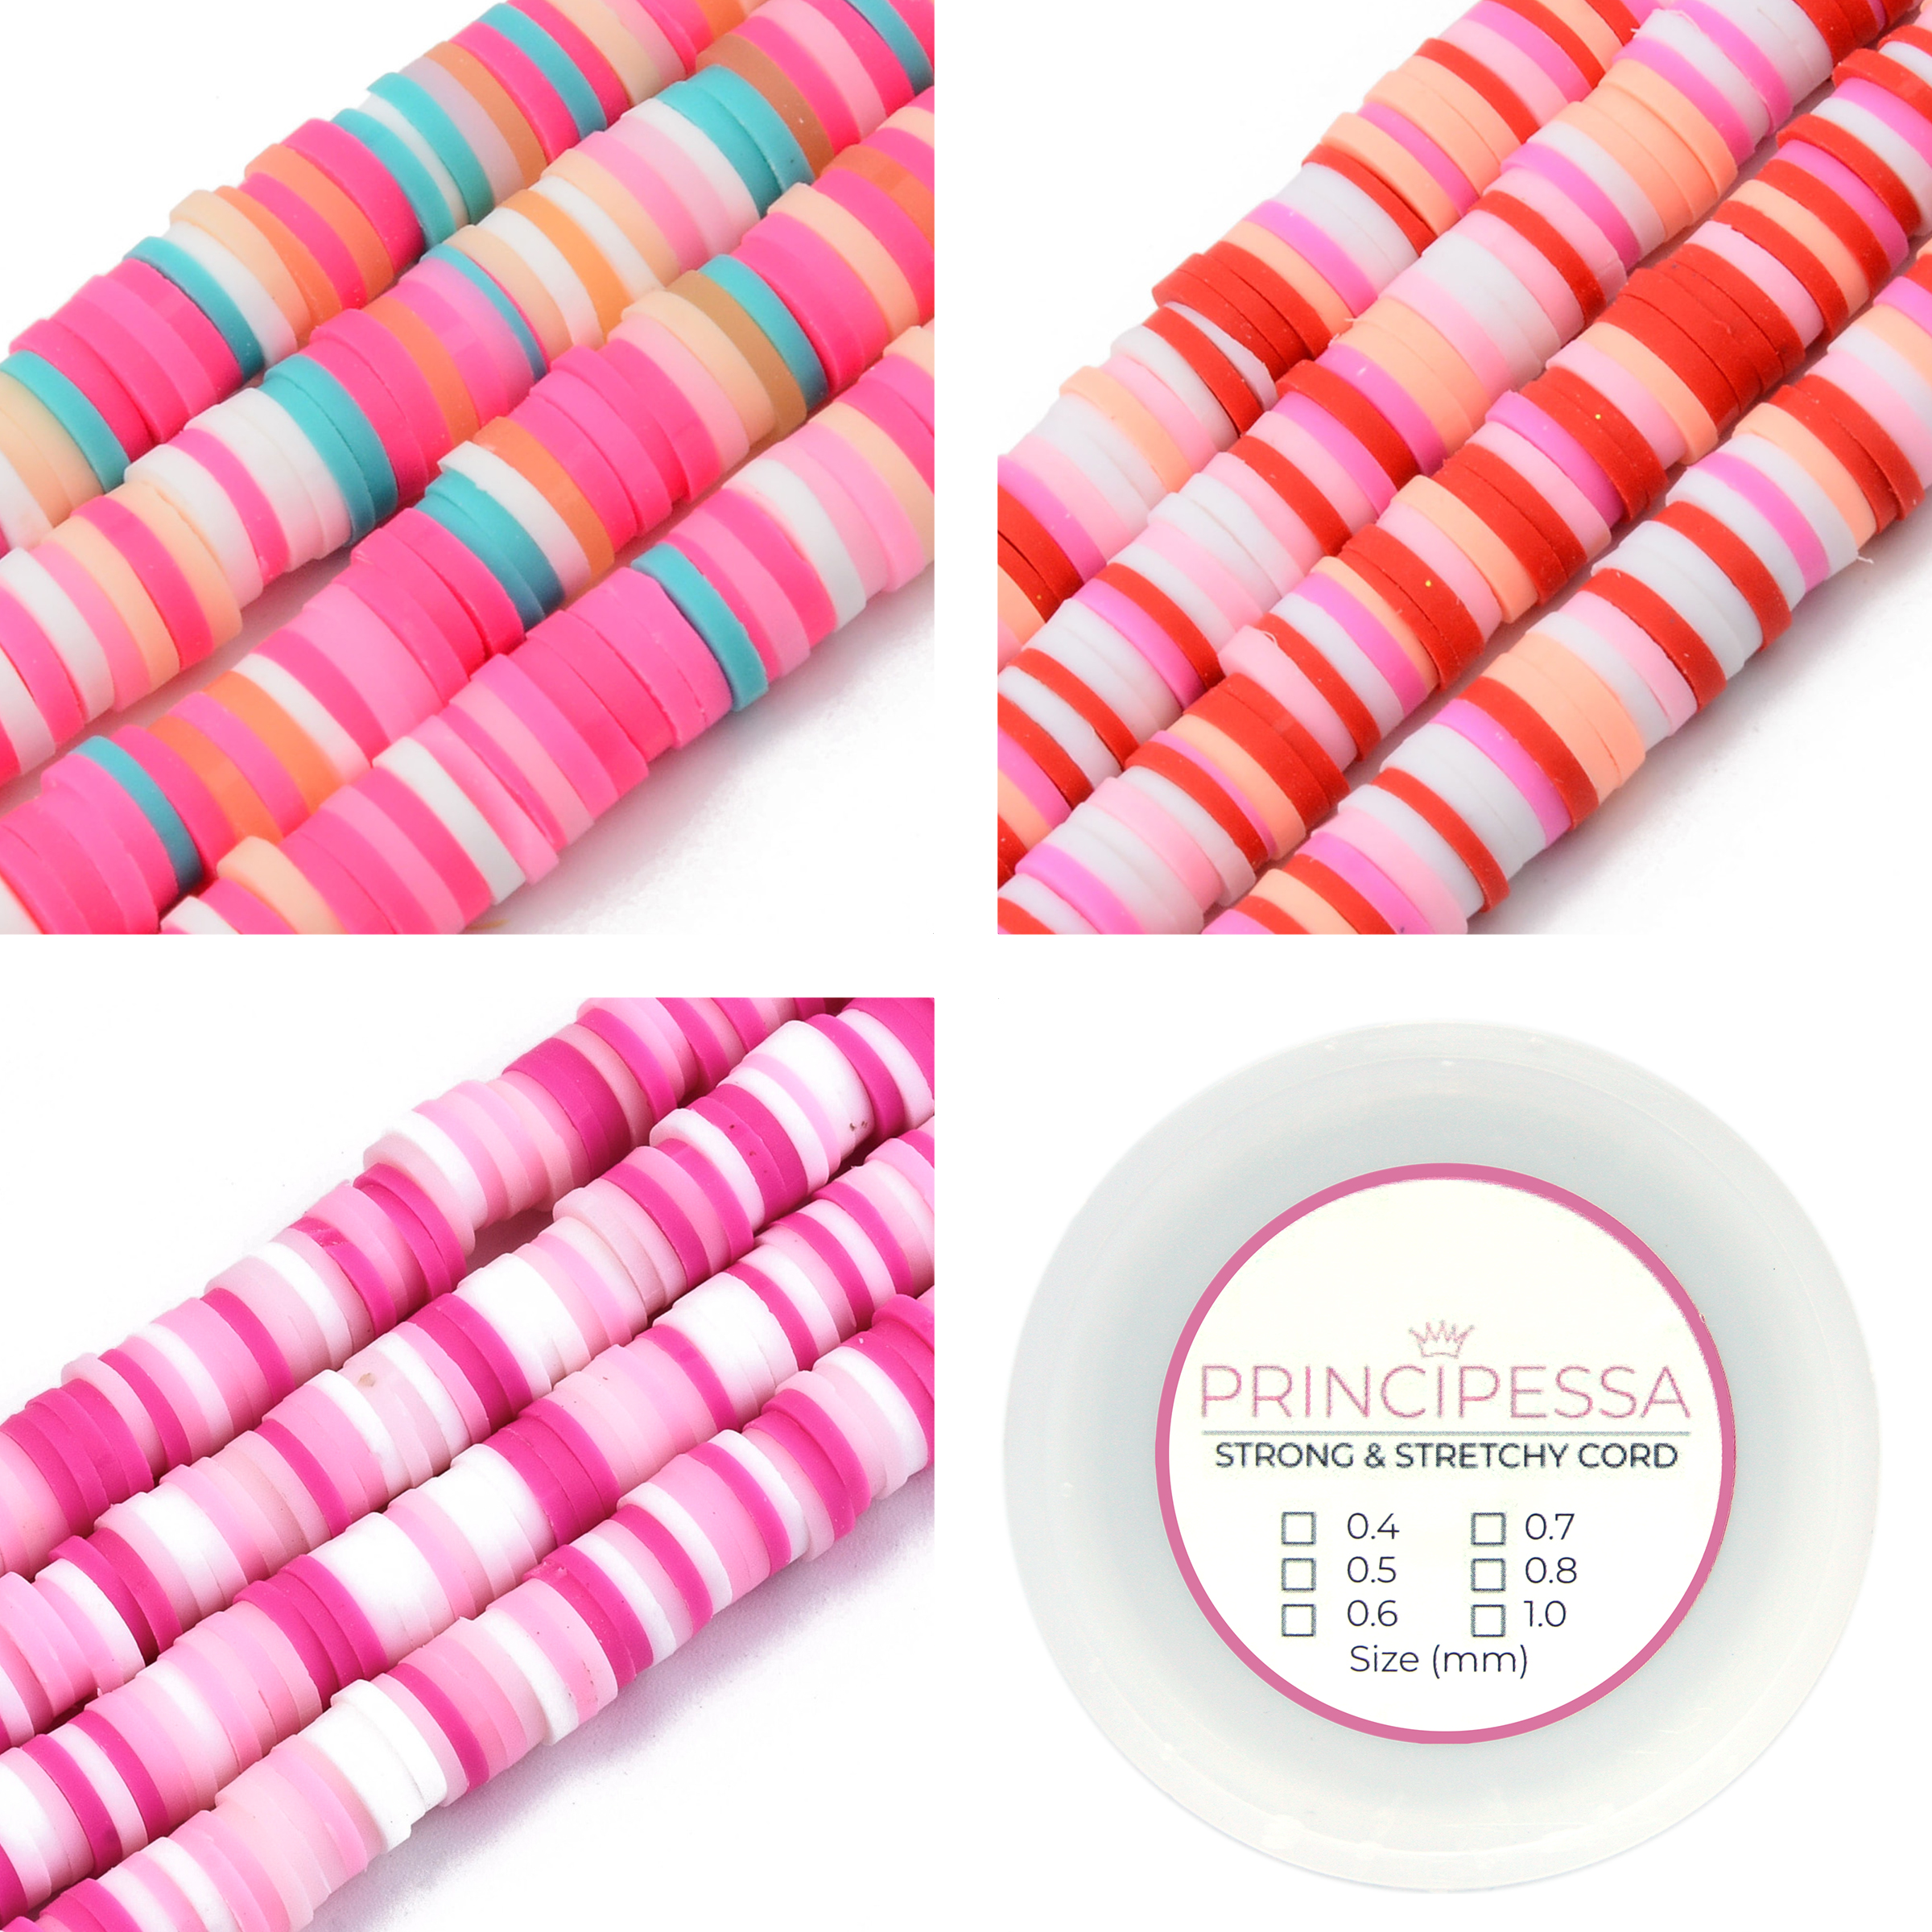 Principessa Katsuki kralen met rol elastiek – Roze/Turquoise-mix, Roze/Roodmix en Roze-mix – 1.150 kralen – Polymeer klei – 6mm kralen